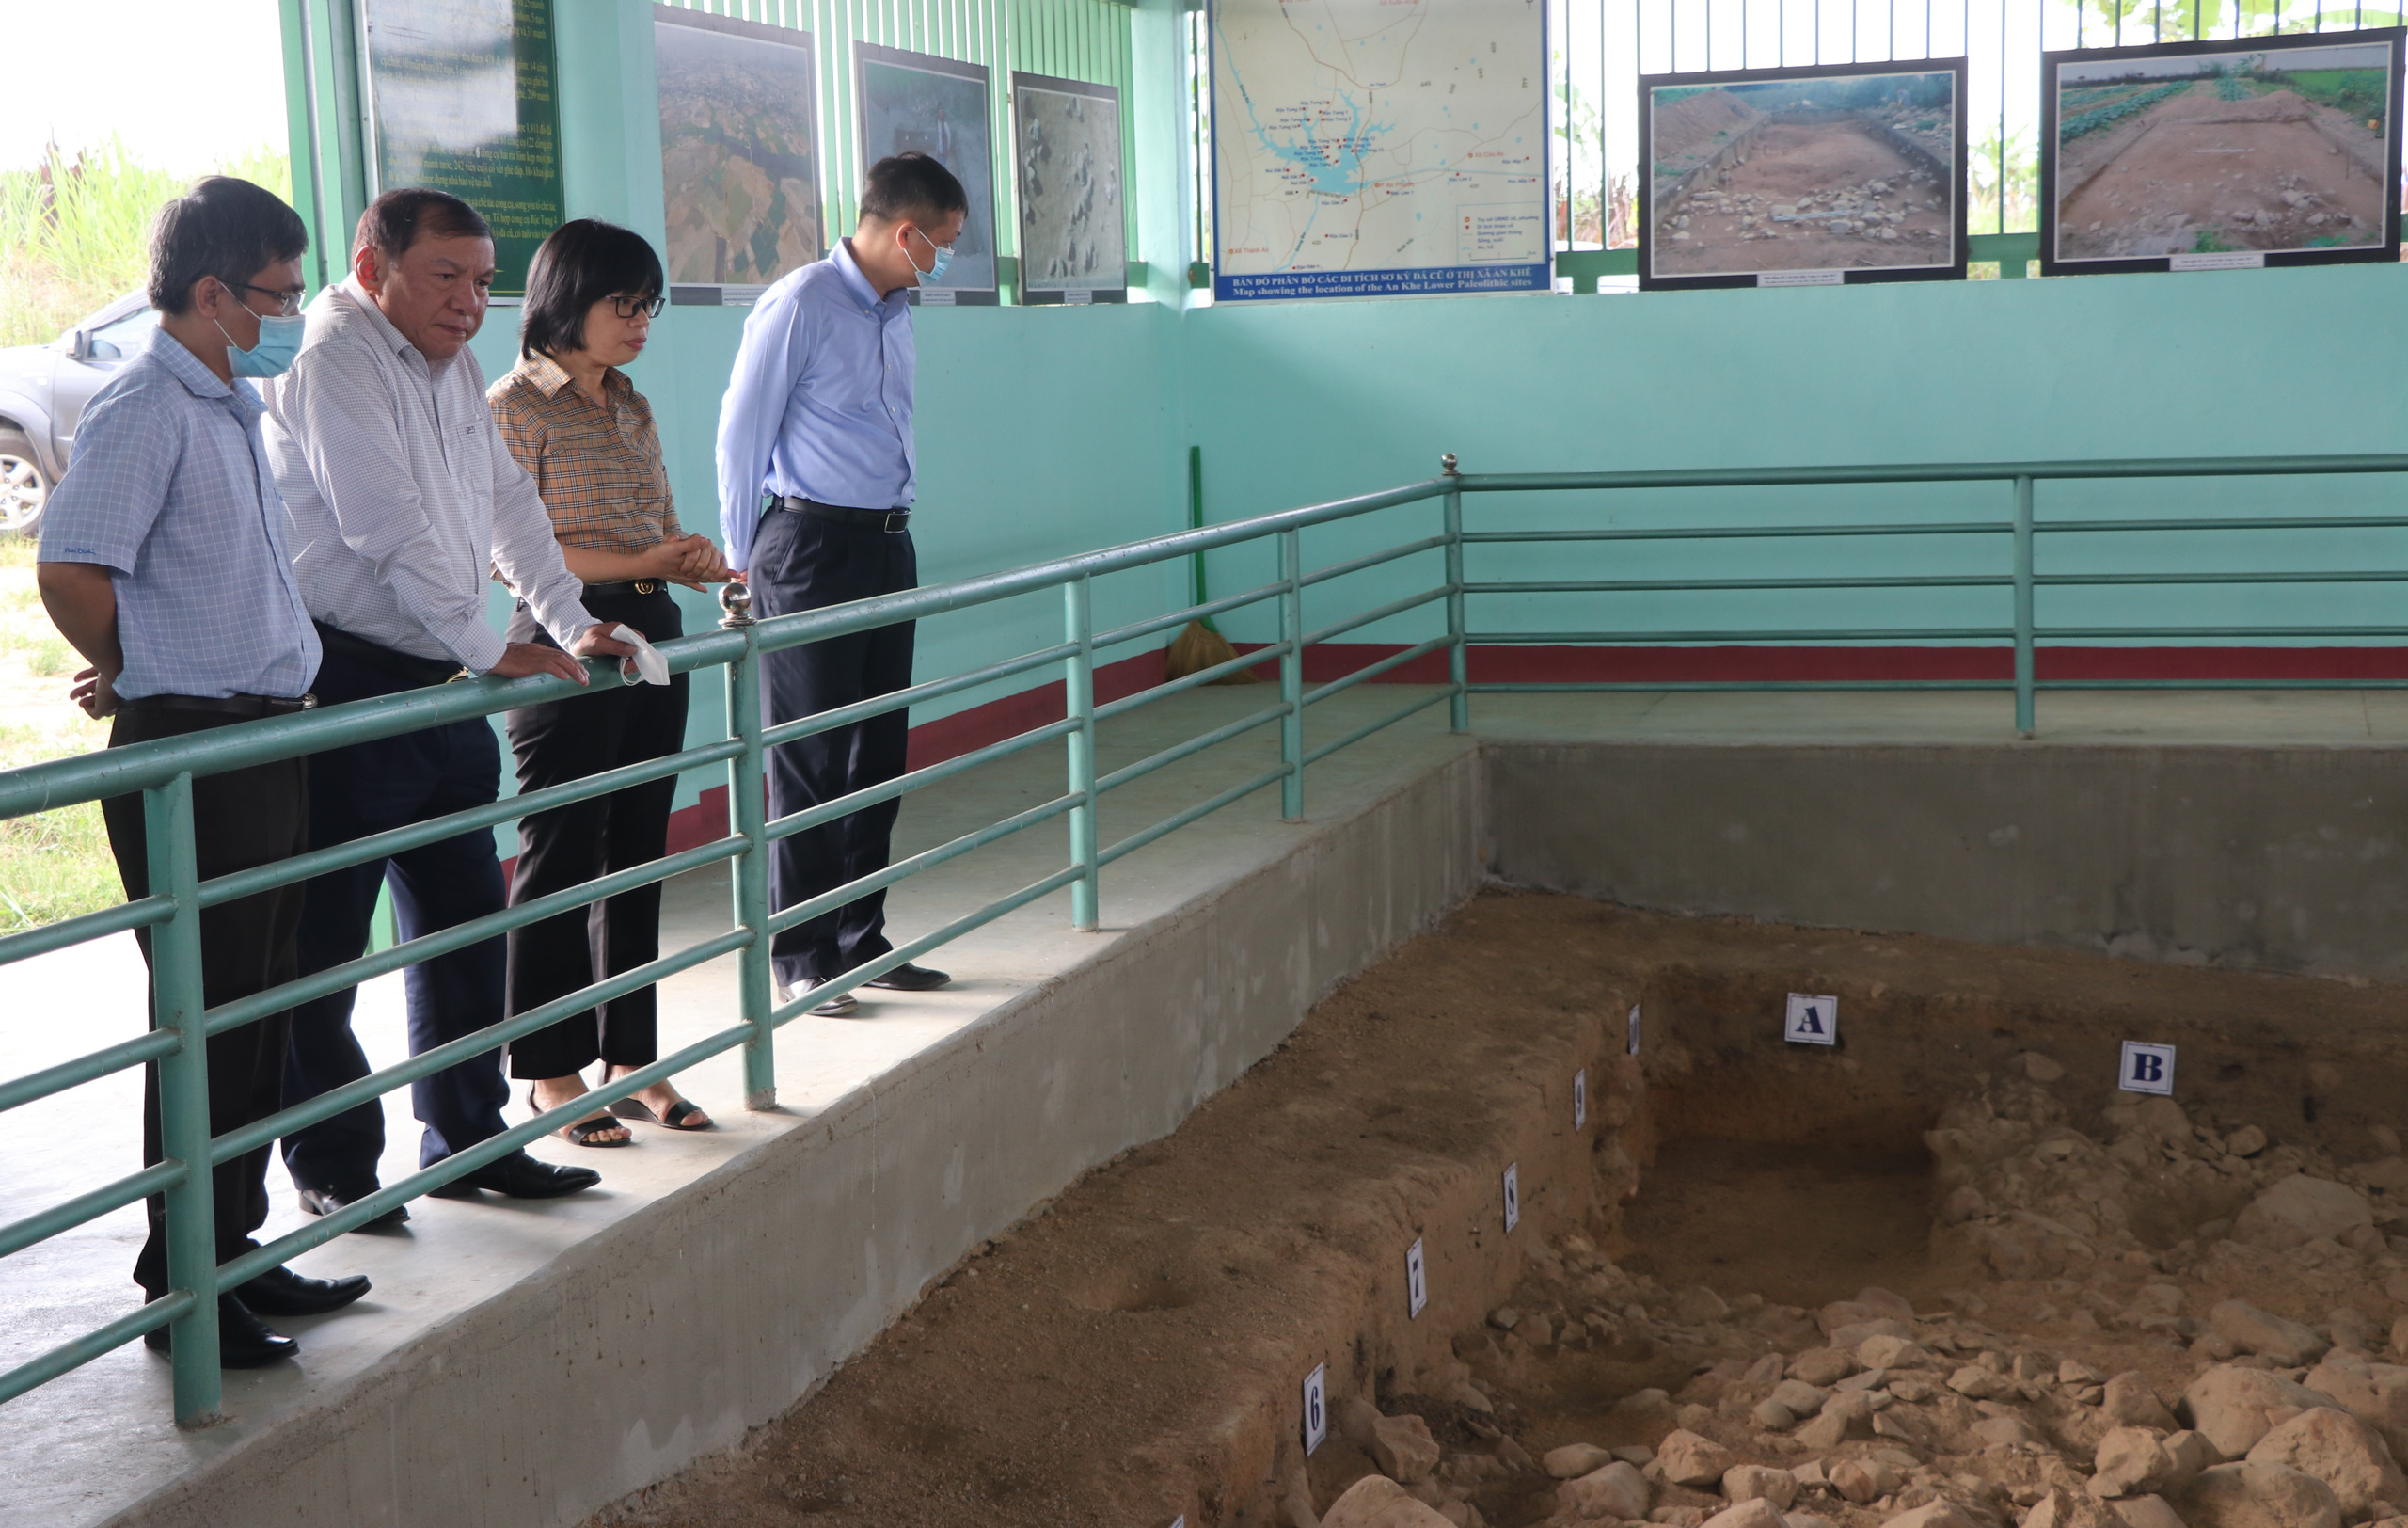 Bộ trưởng Nguyễn Văn Hùng thăm di tích khảo cổ thời đại Đá cũ Rộc Tưng và Khu di tích lịch sử-văn hóa Tây Sơn Thượng (Gia Lai) - Ảnh 1.